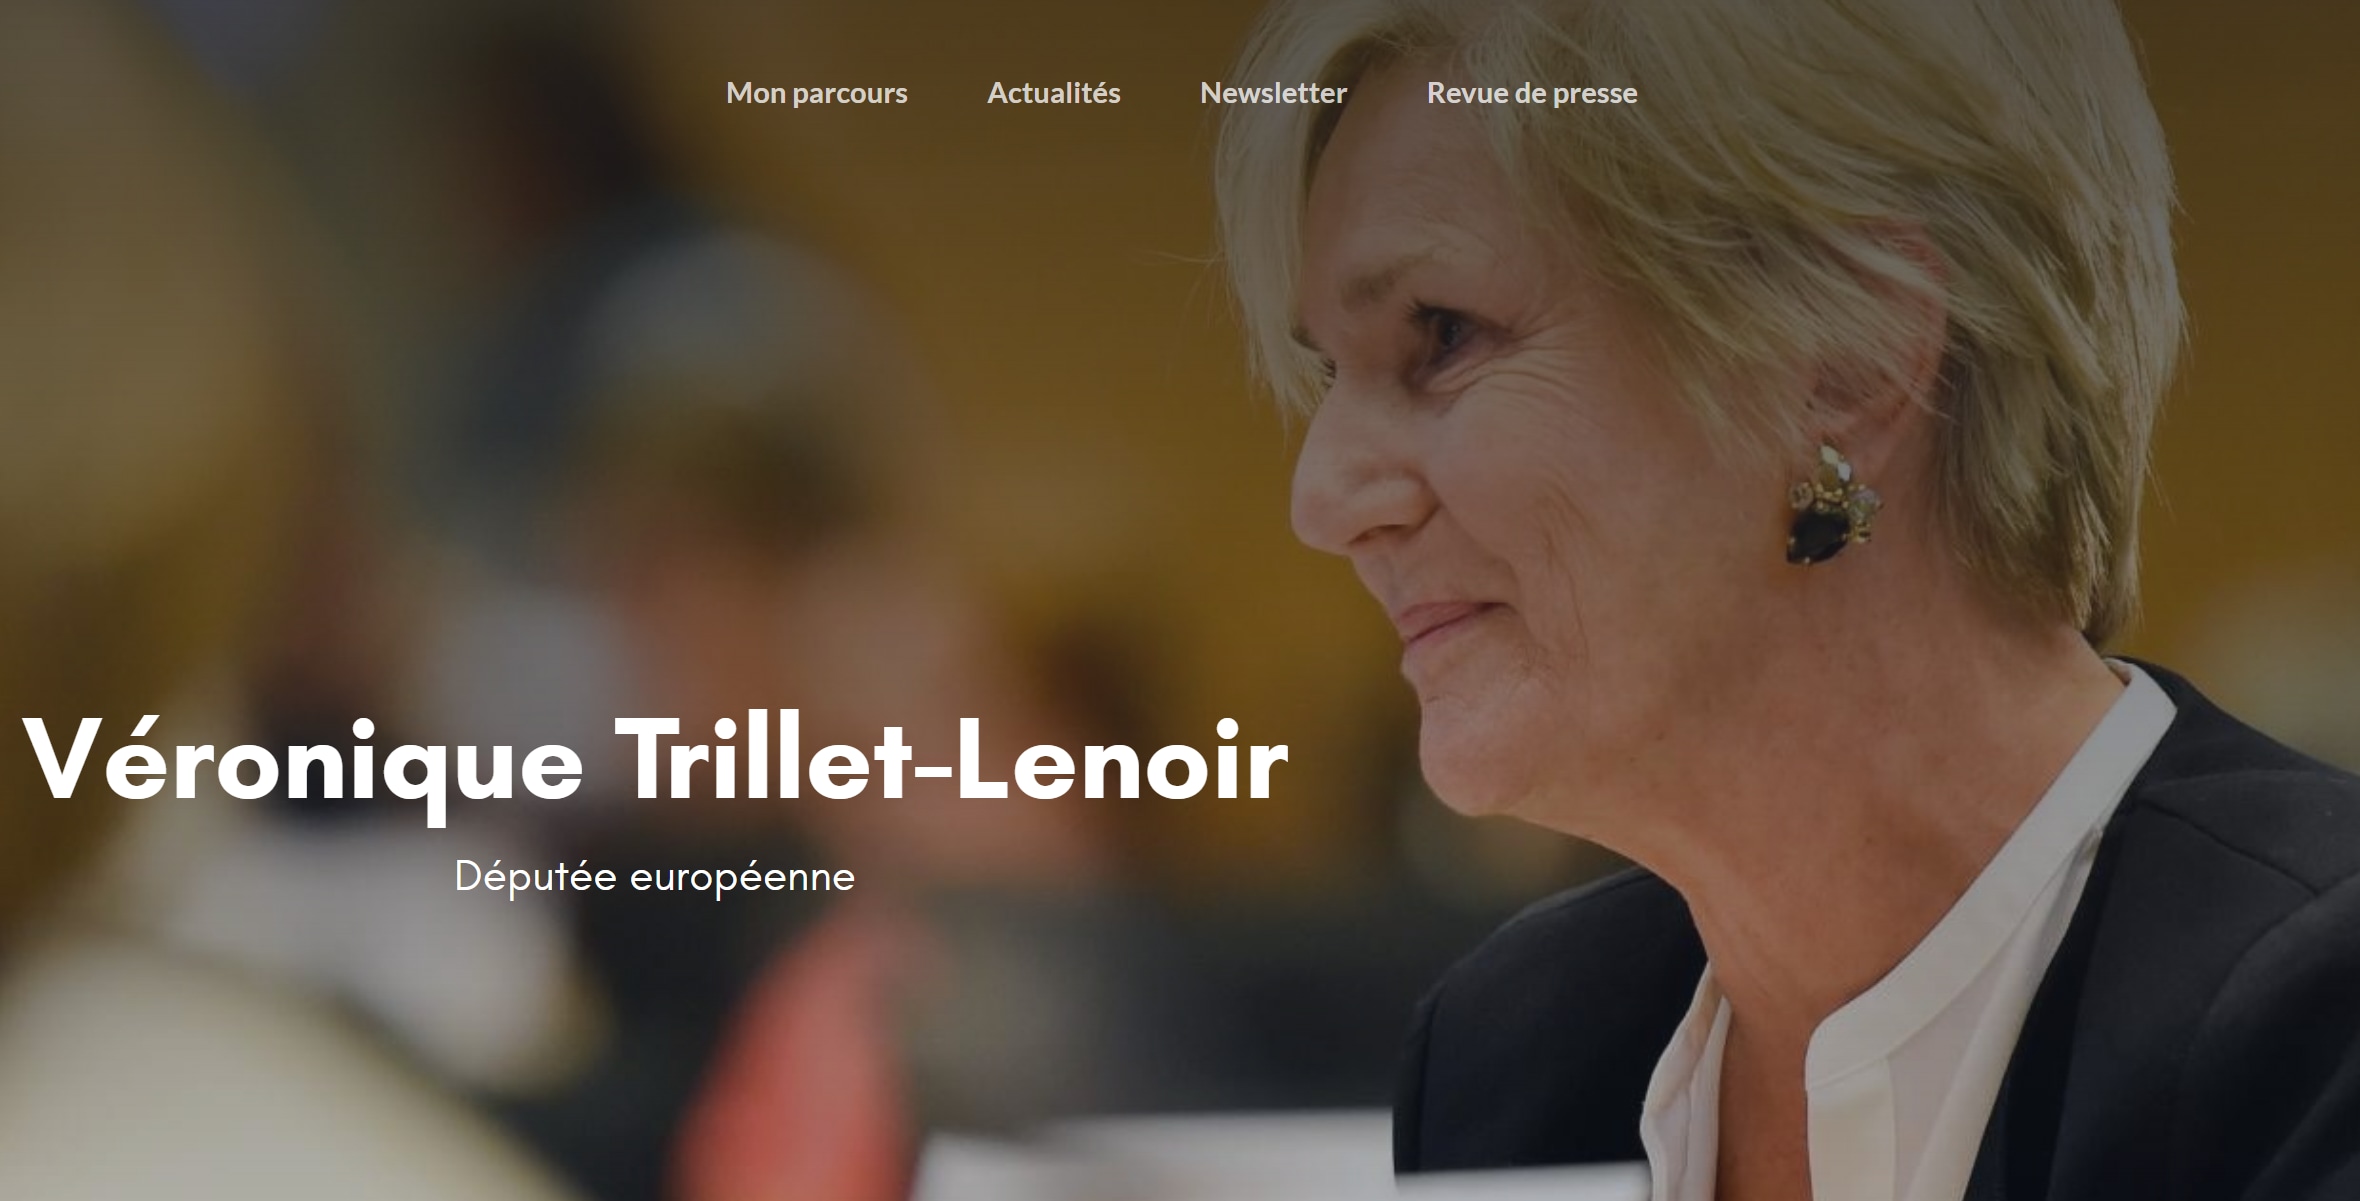 Veronique Trillet-Lenoir